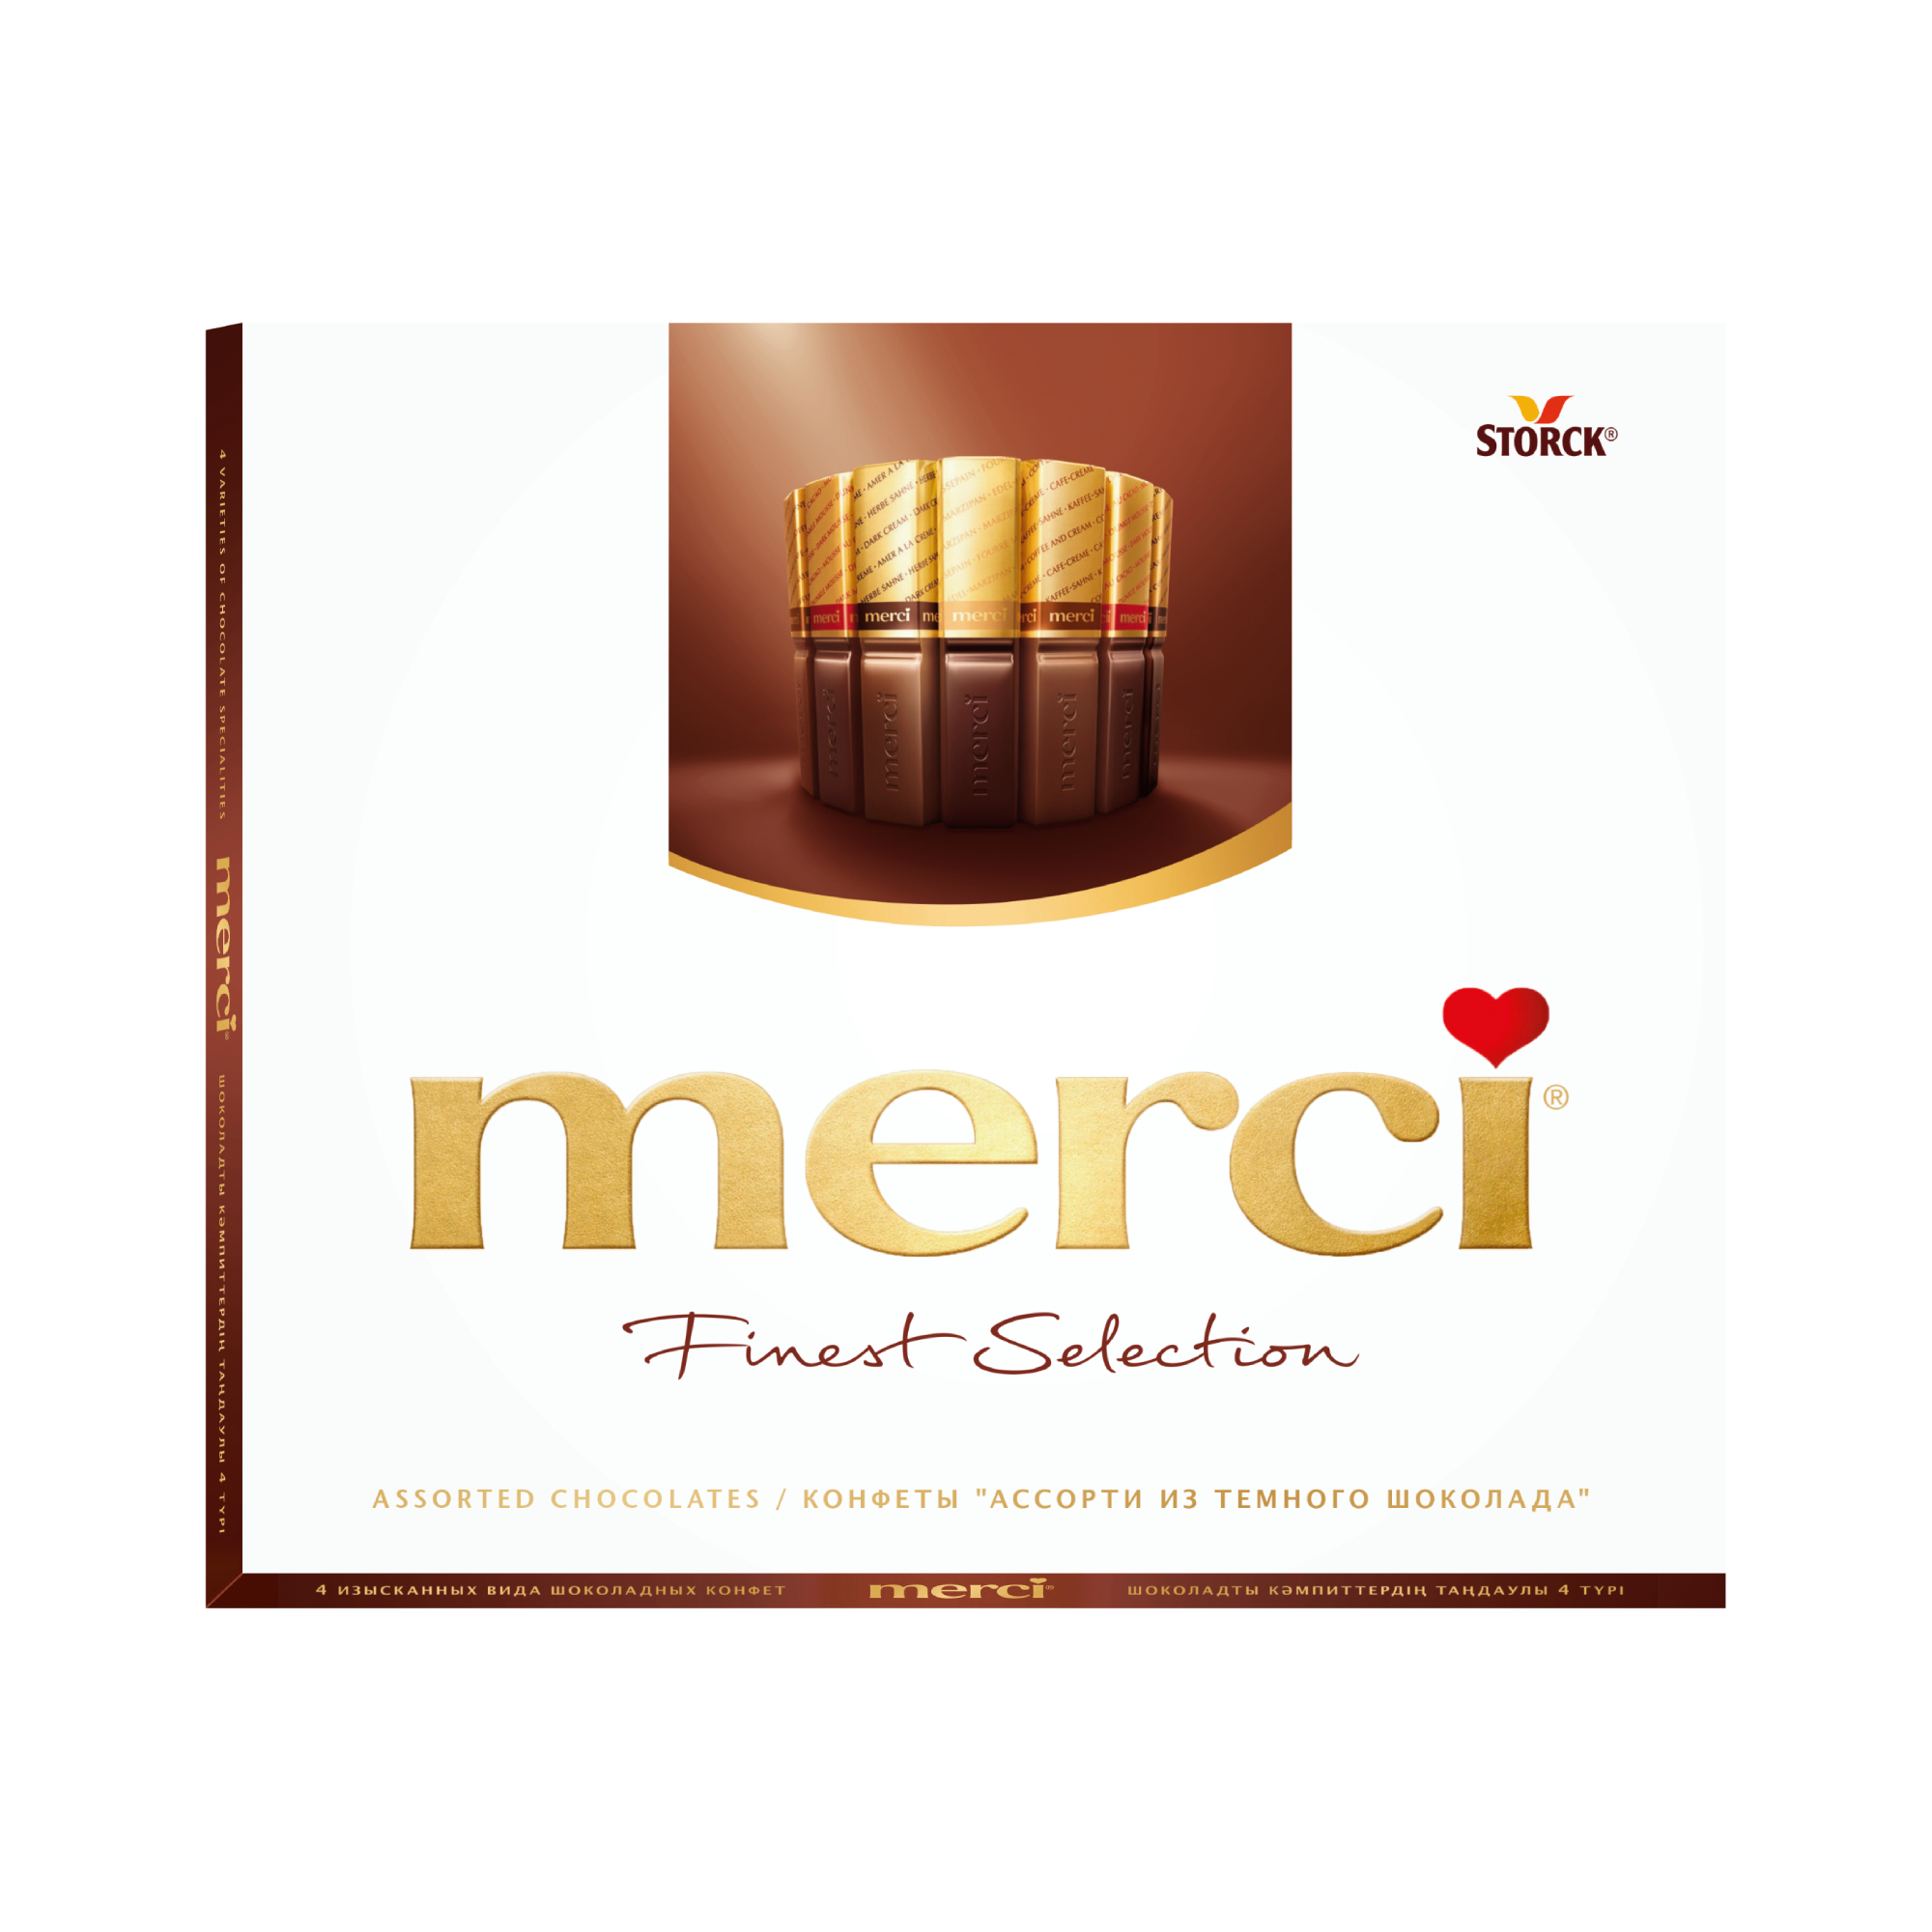 Шоколадный набор Storck Merci Ассорти 4 вида с начинкой из шоколадного мусса 210 г печенье jacobsens tivoli c молочным и темным шоколадом 150 г